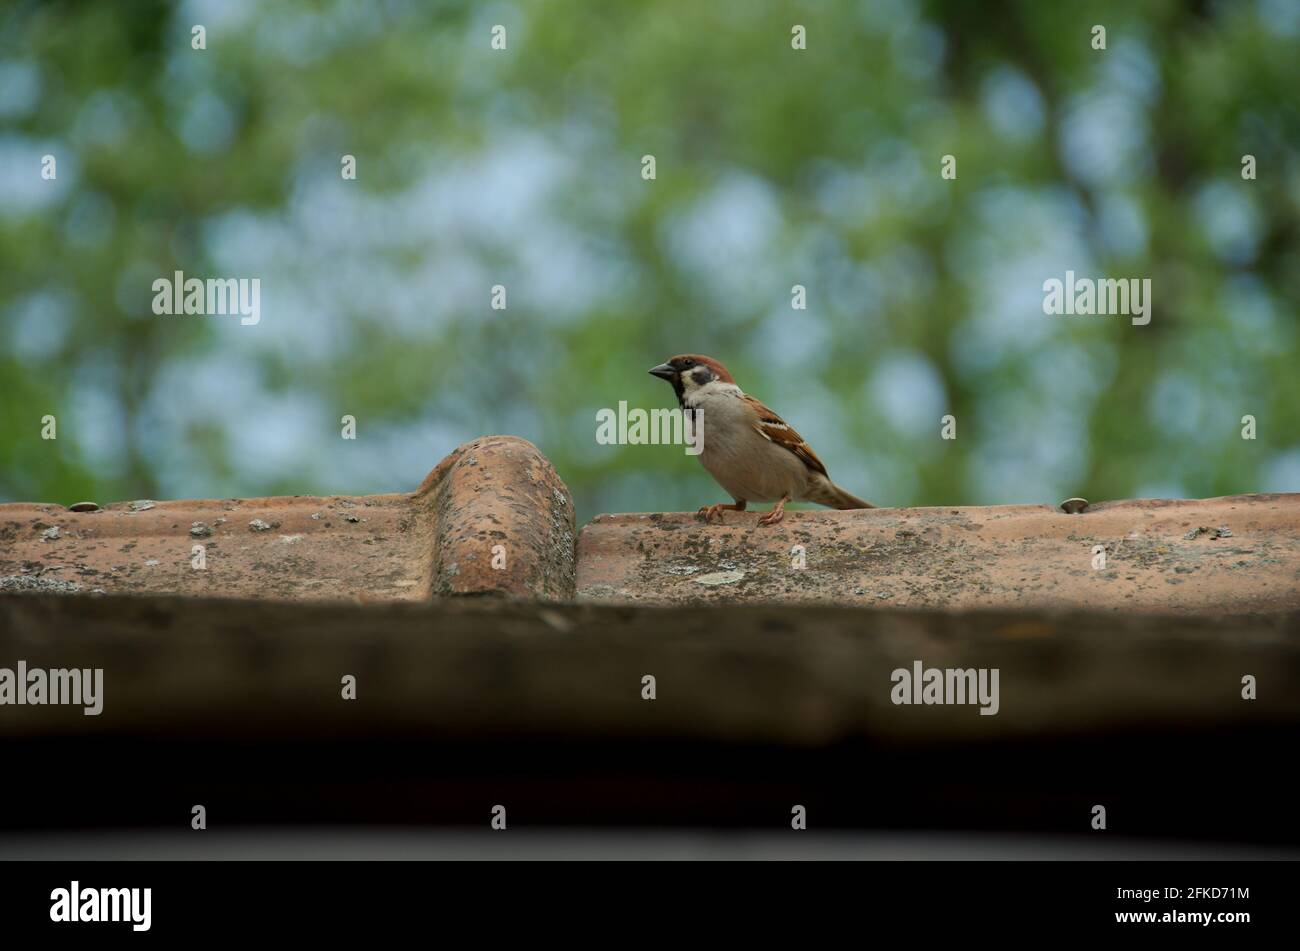 alter Dachfirst Sperlingskautz Vogel wartet Tonziegel Bäume Hintergrund sitzend Stock Photo